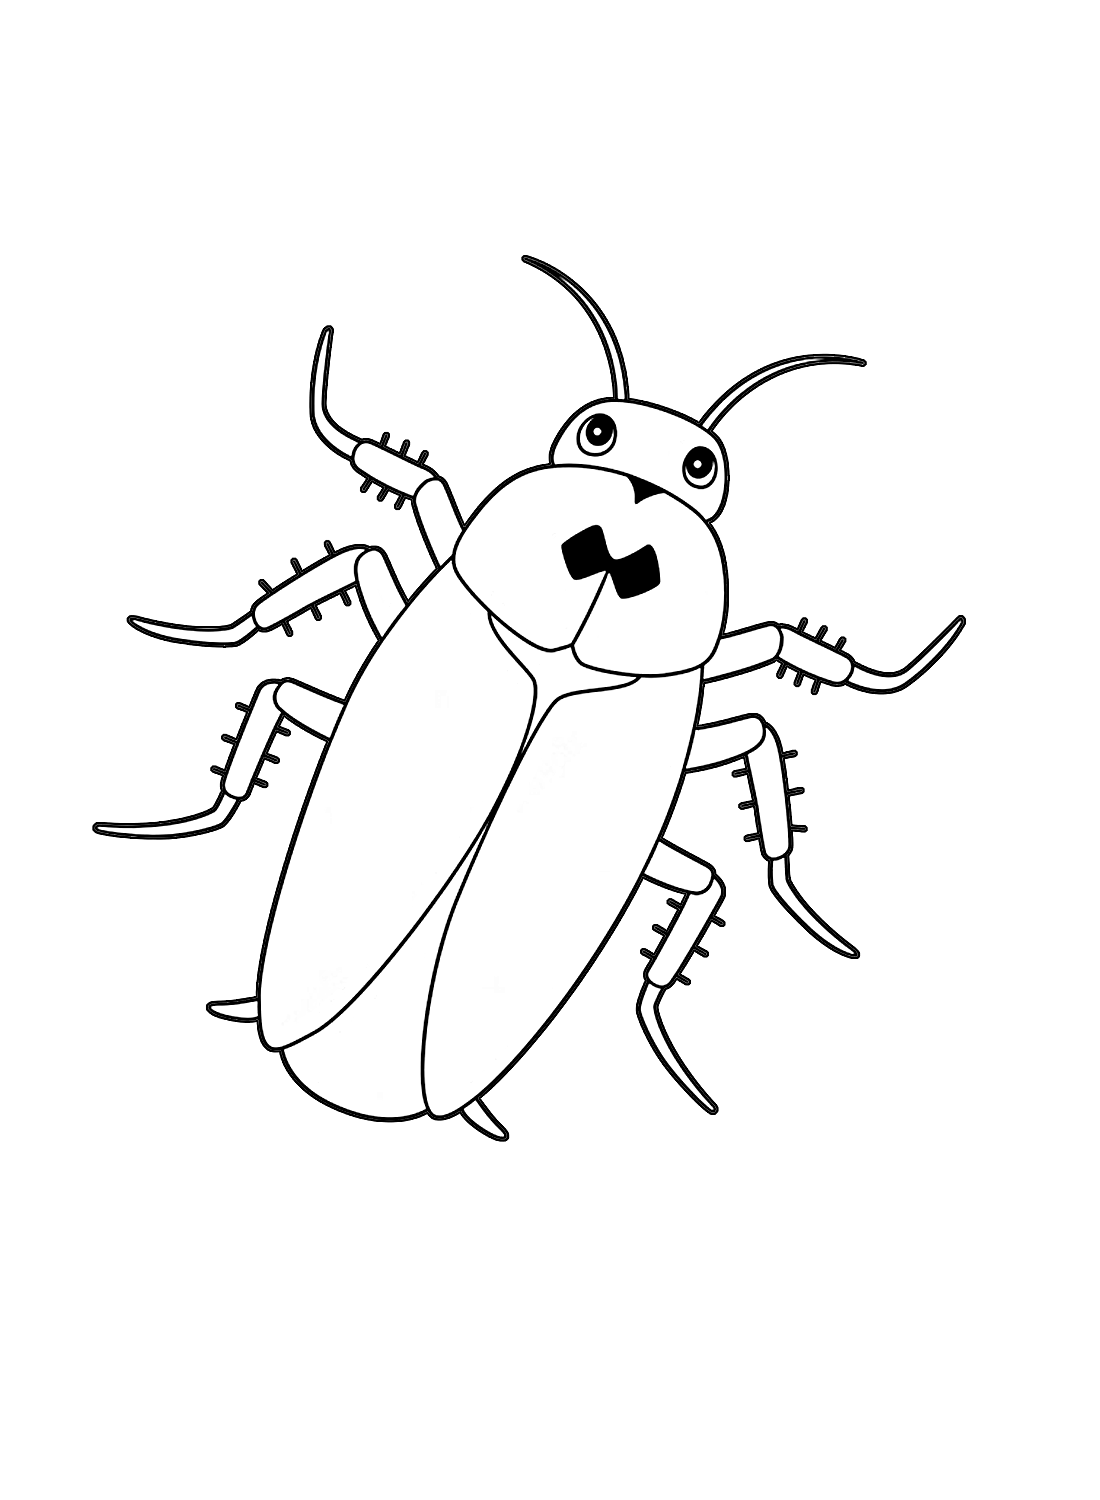 De schattige kakkerlak van Cockroach